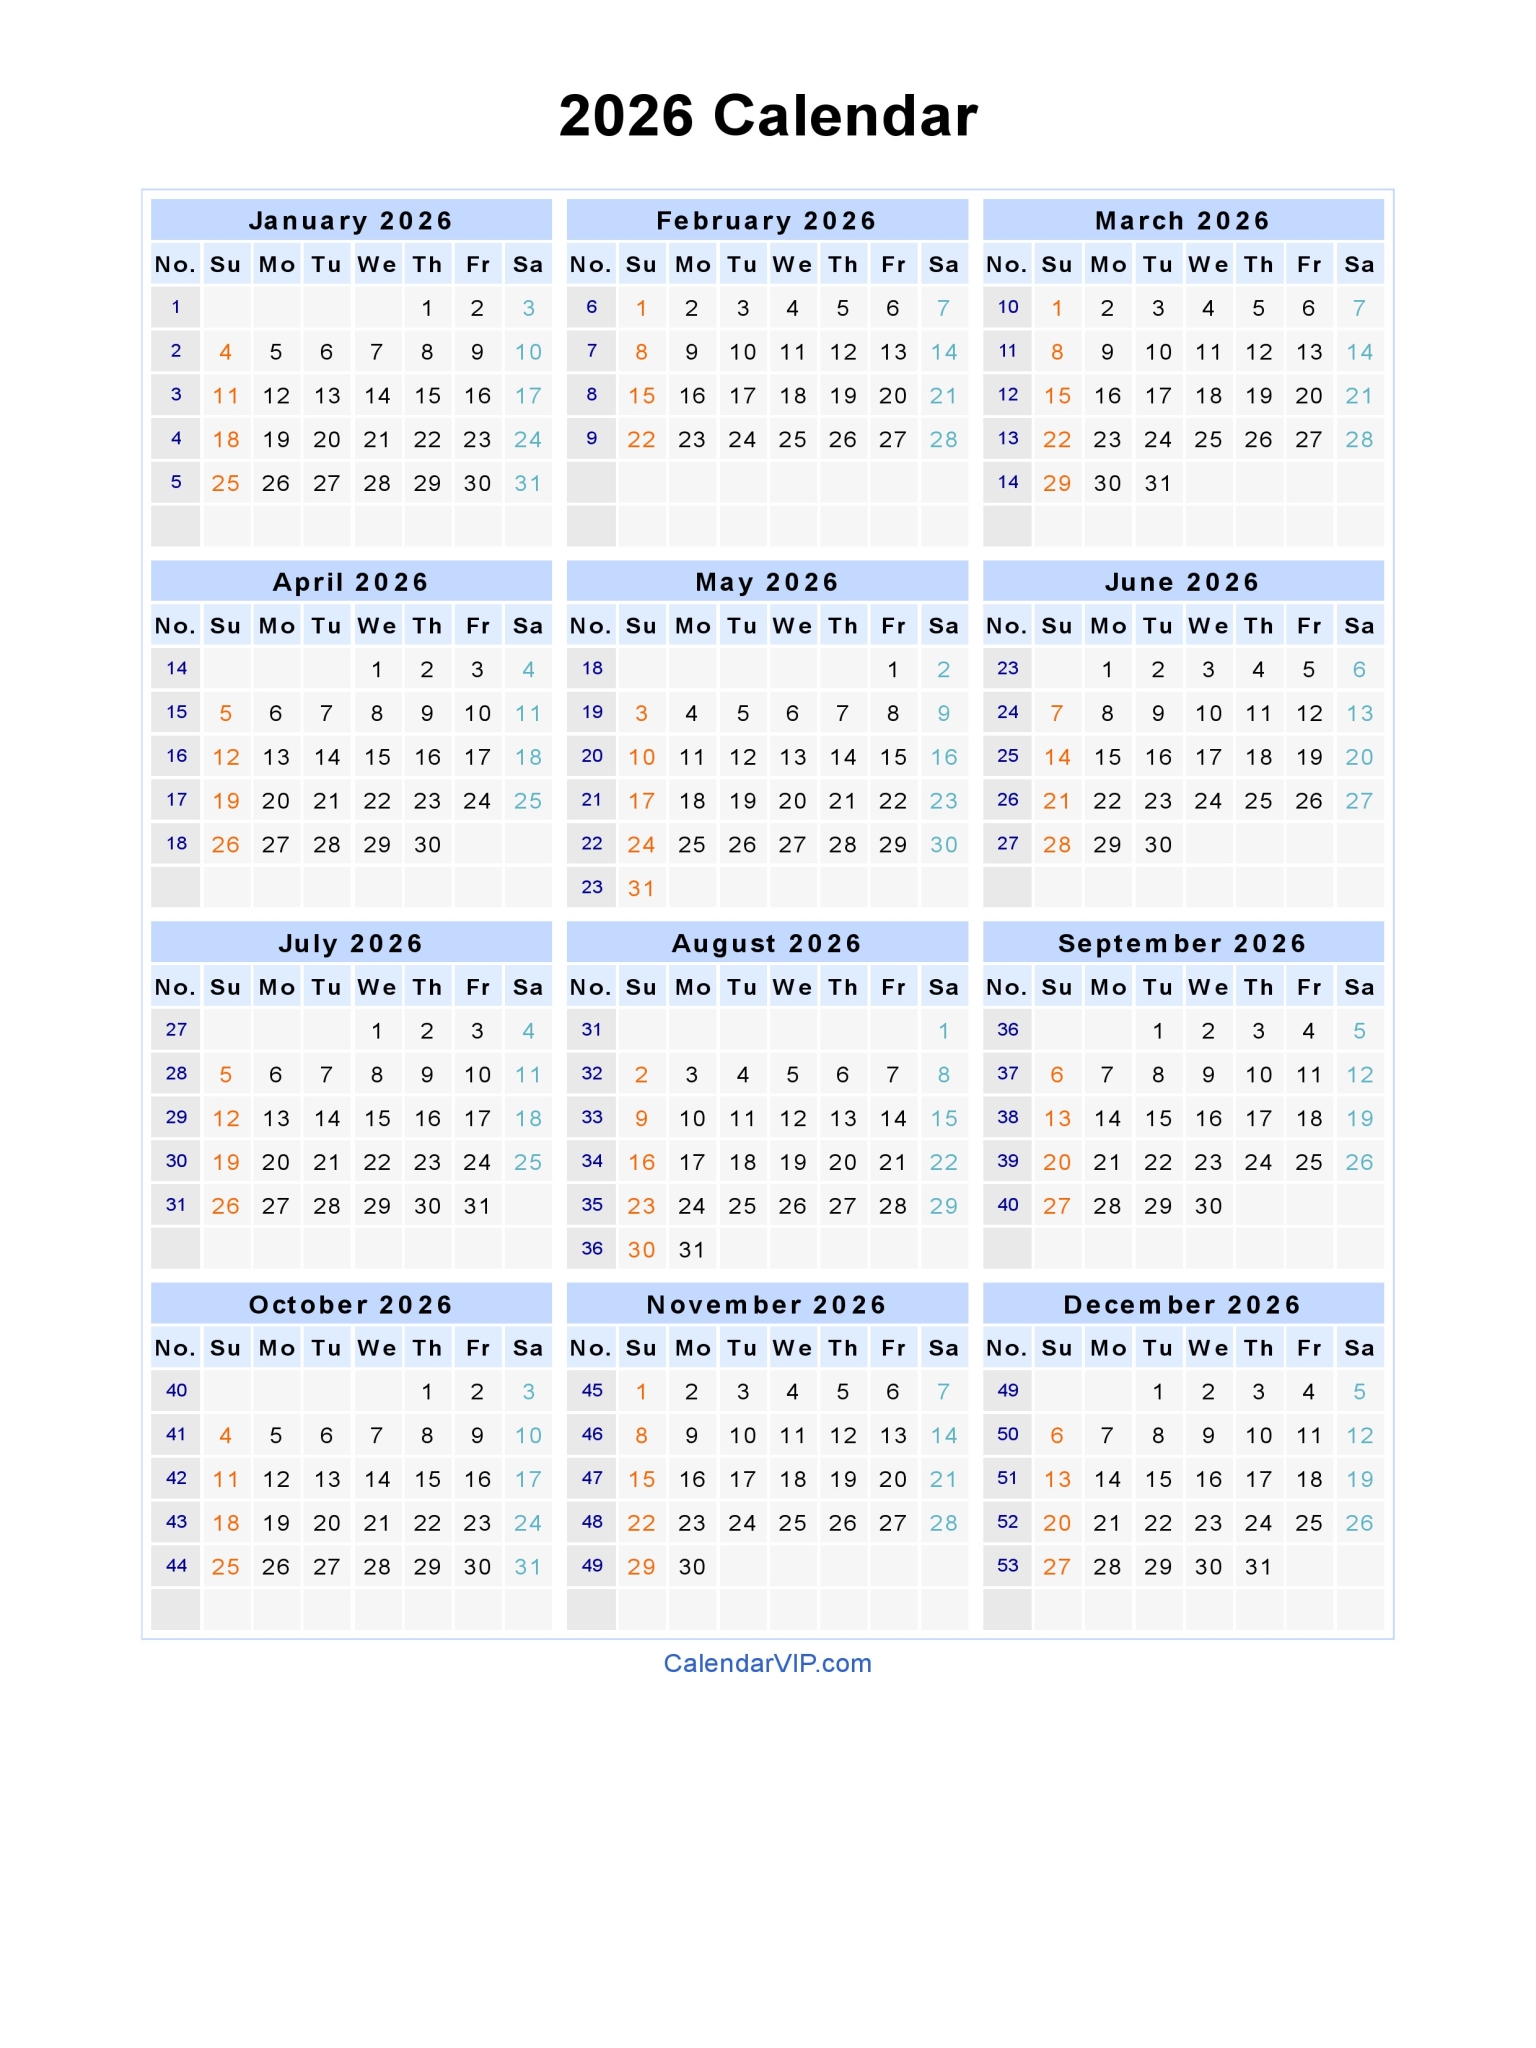 2026-calendar-blank-printable-calendar-template-in-pdf-word-excel